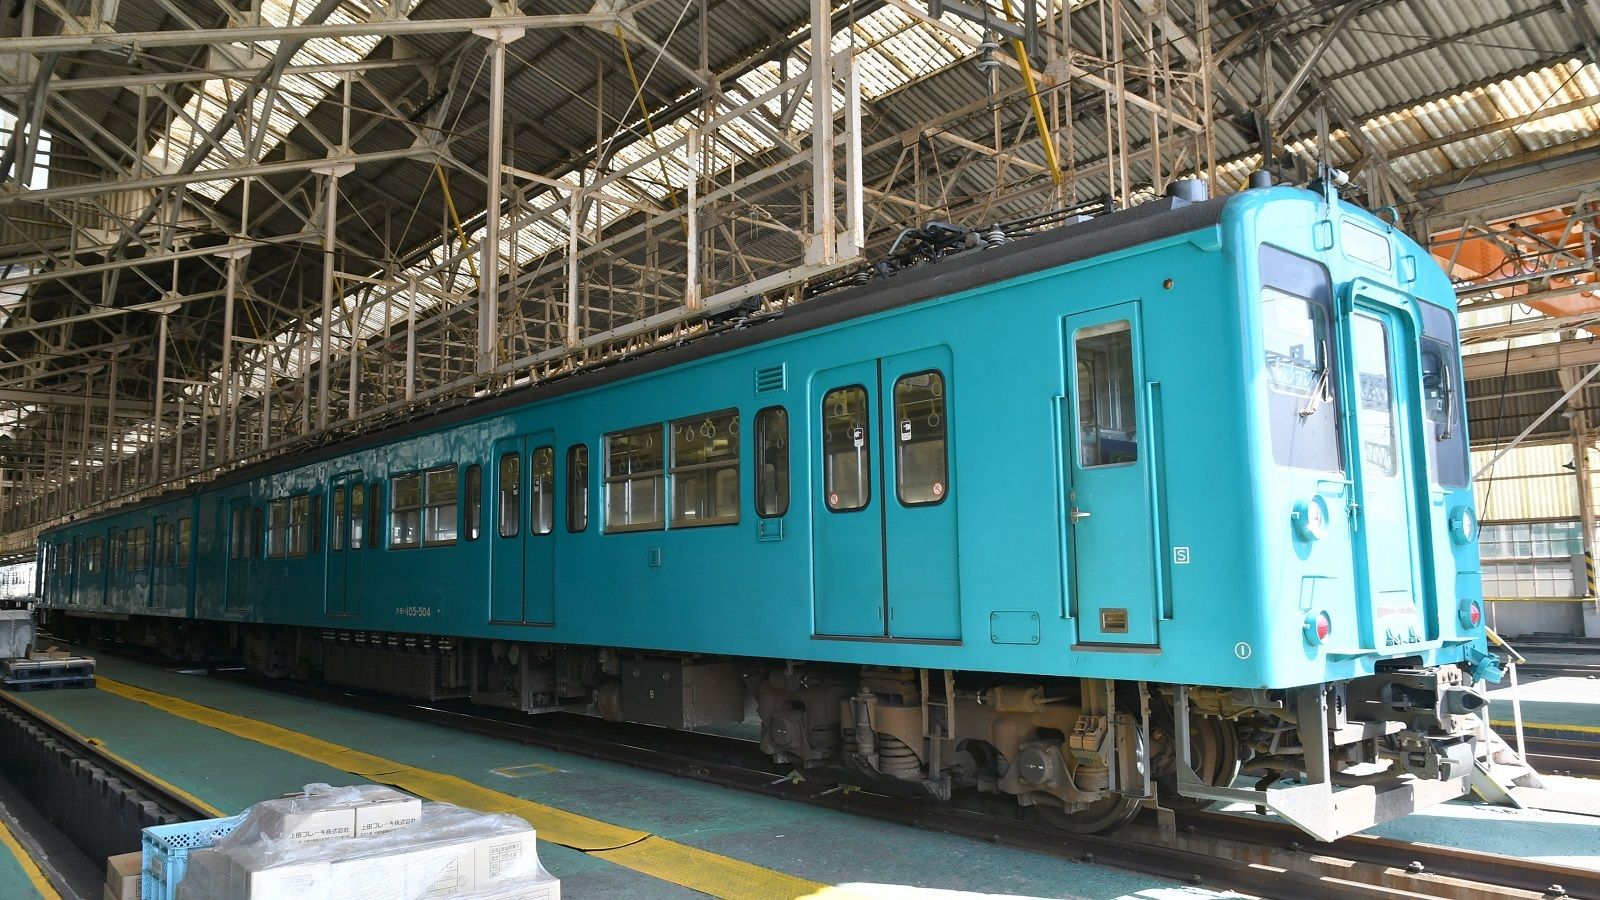 関東出身､西日本で育った｢105系｣が最後の活躍 元は常磐線の国鉄車両､奈良･和歌山から引退 | 通勤電車 | 東洋経済オンライン